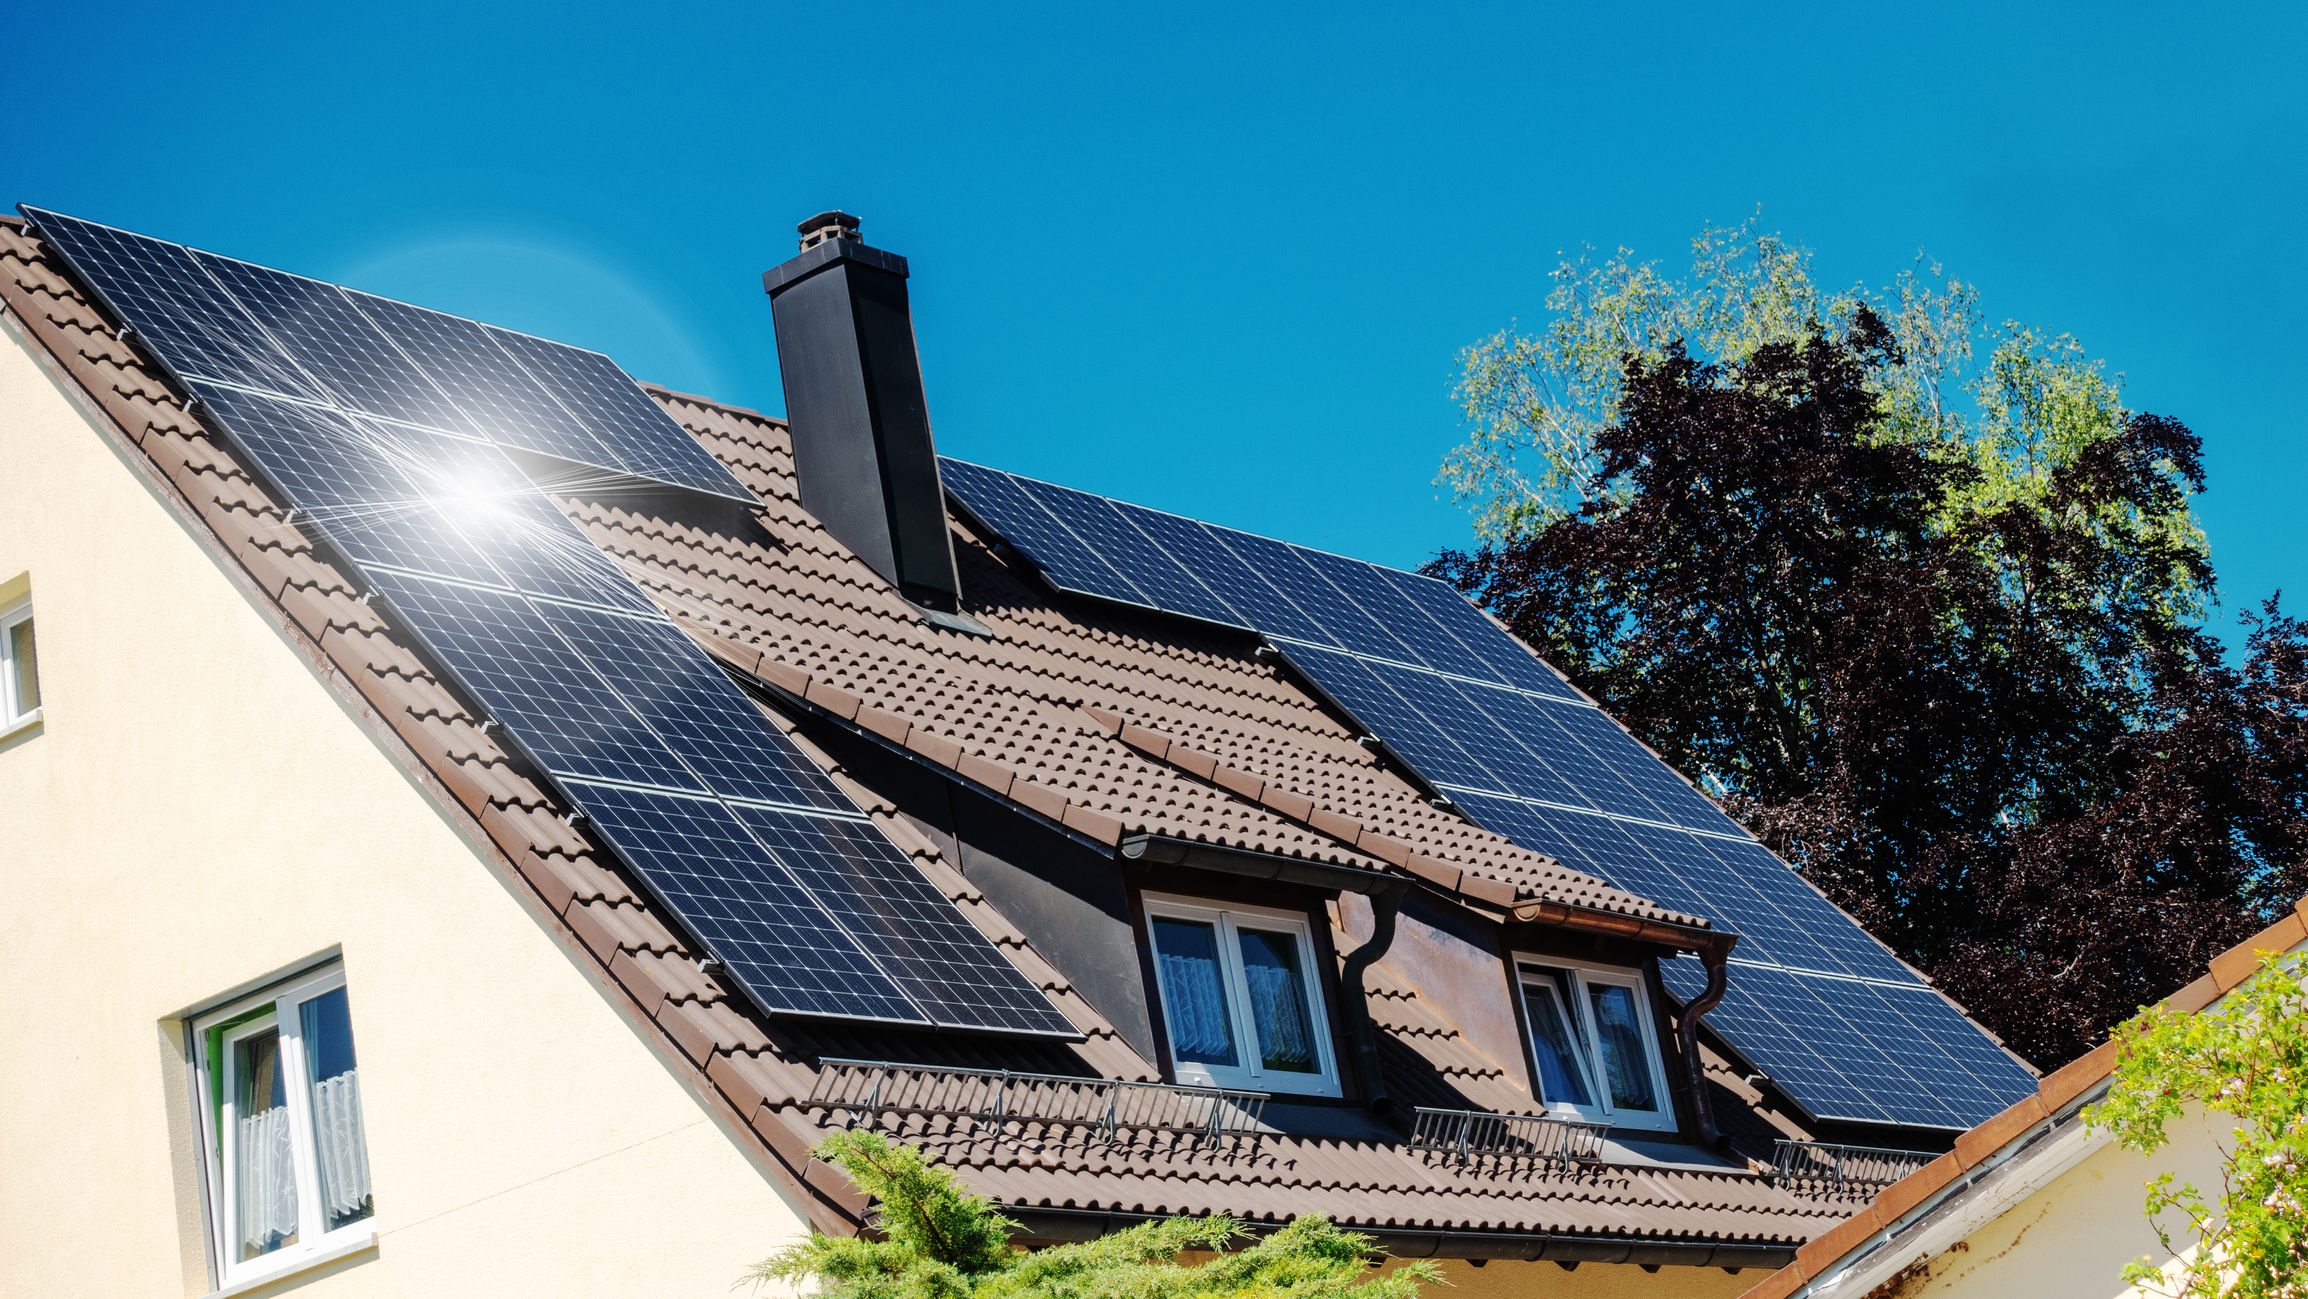 Hva koster det å installere solcellepanel på huset, og lønner det seg?